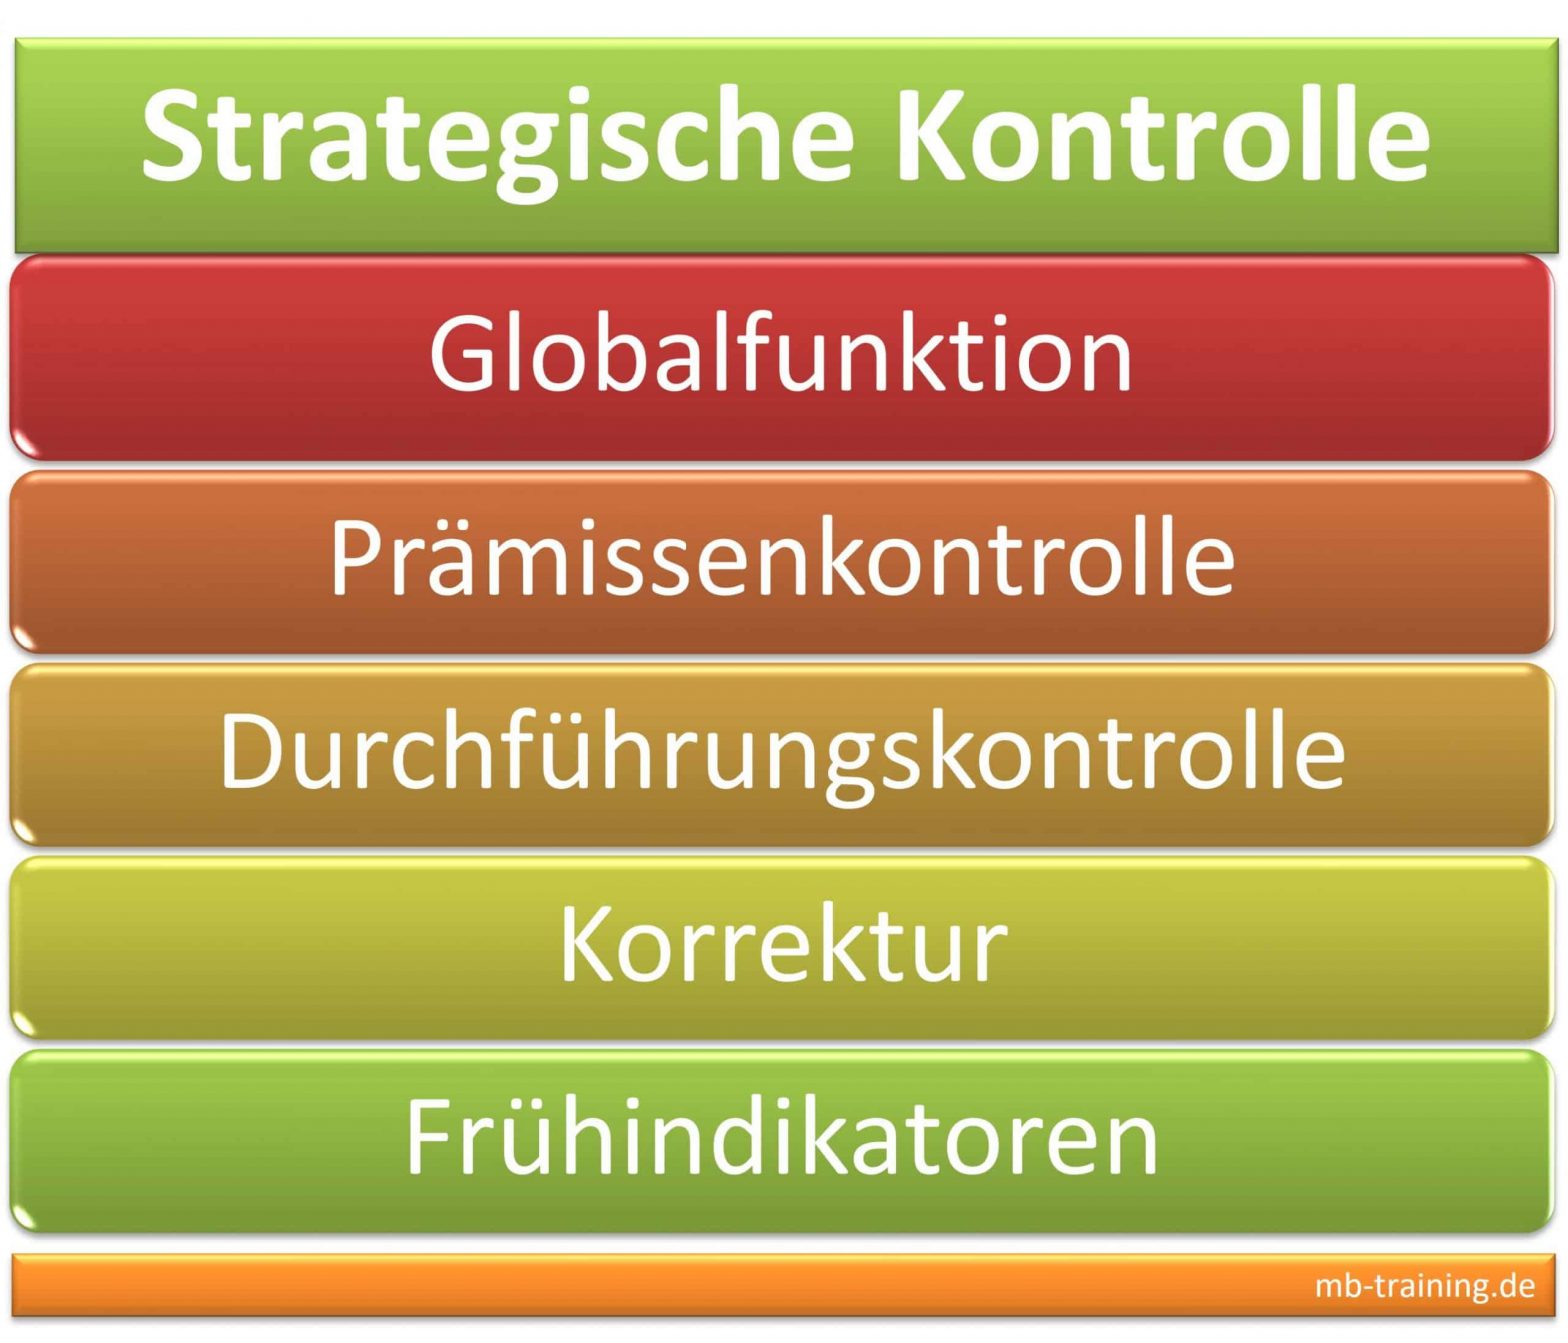 Strategische Kontrolle und Globalfunktion, Prämissenkontrolle, Durchführungskontrolle, Kontrolle der strategischen Planung und Vorgaben.